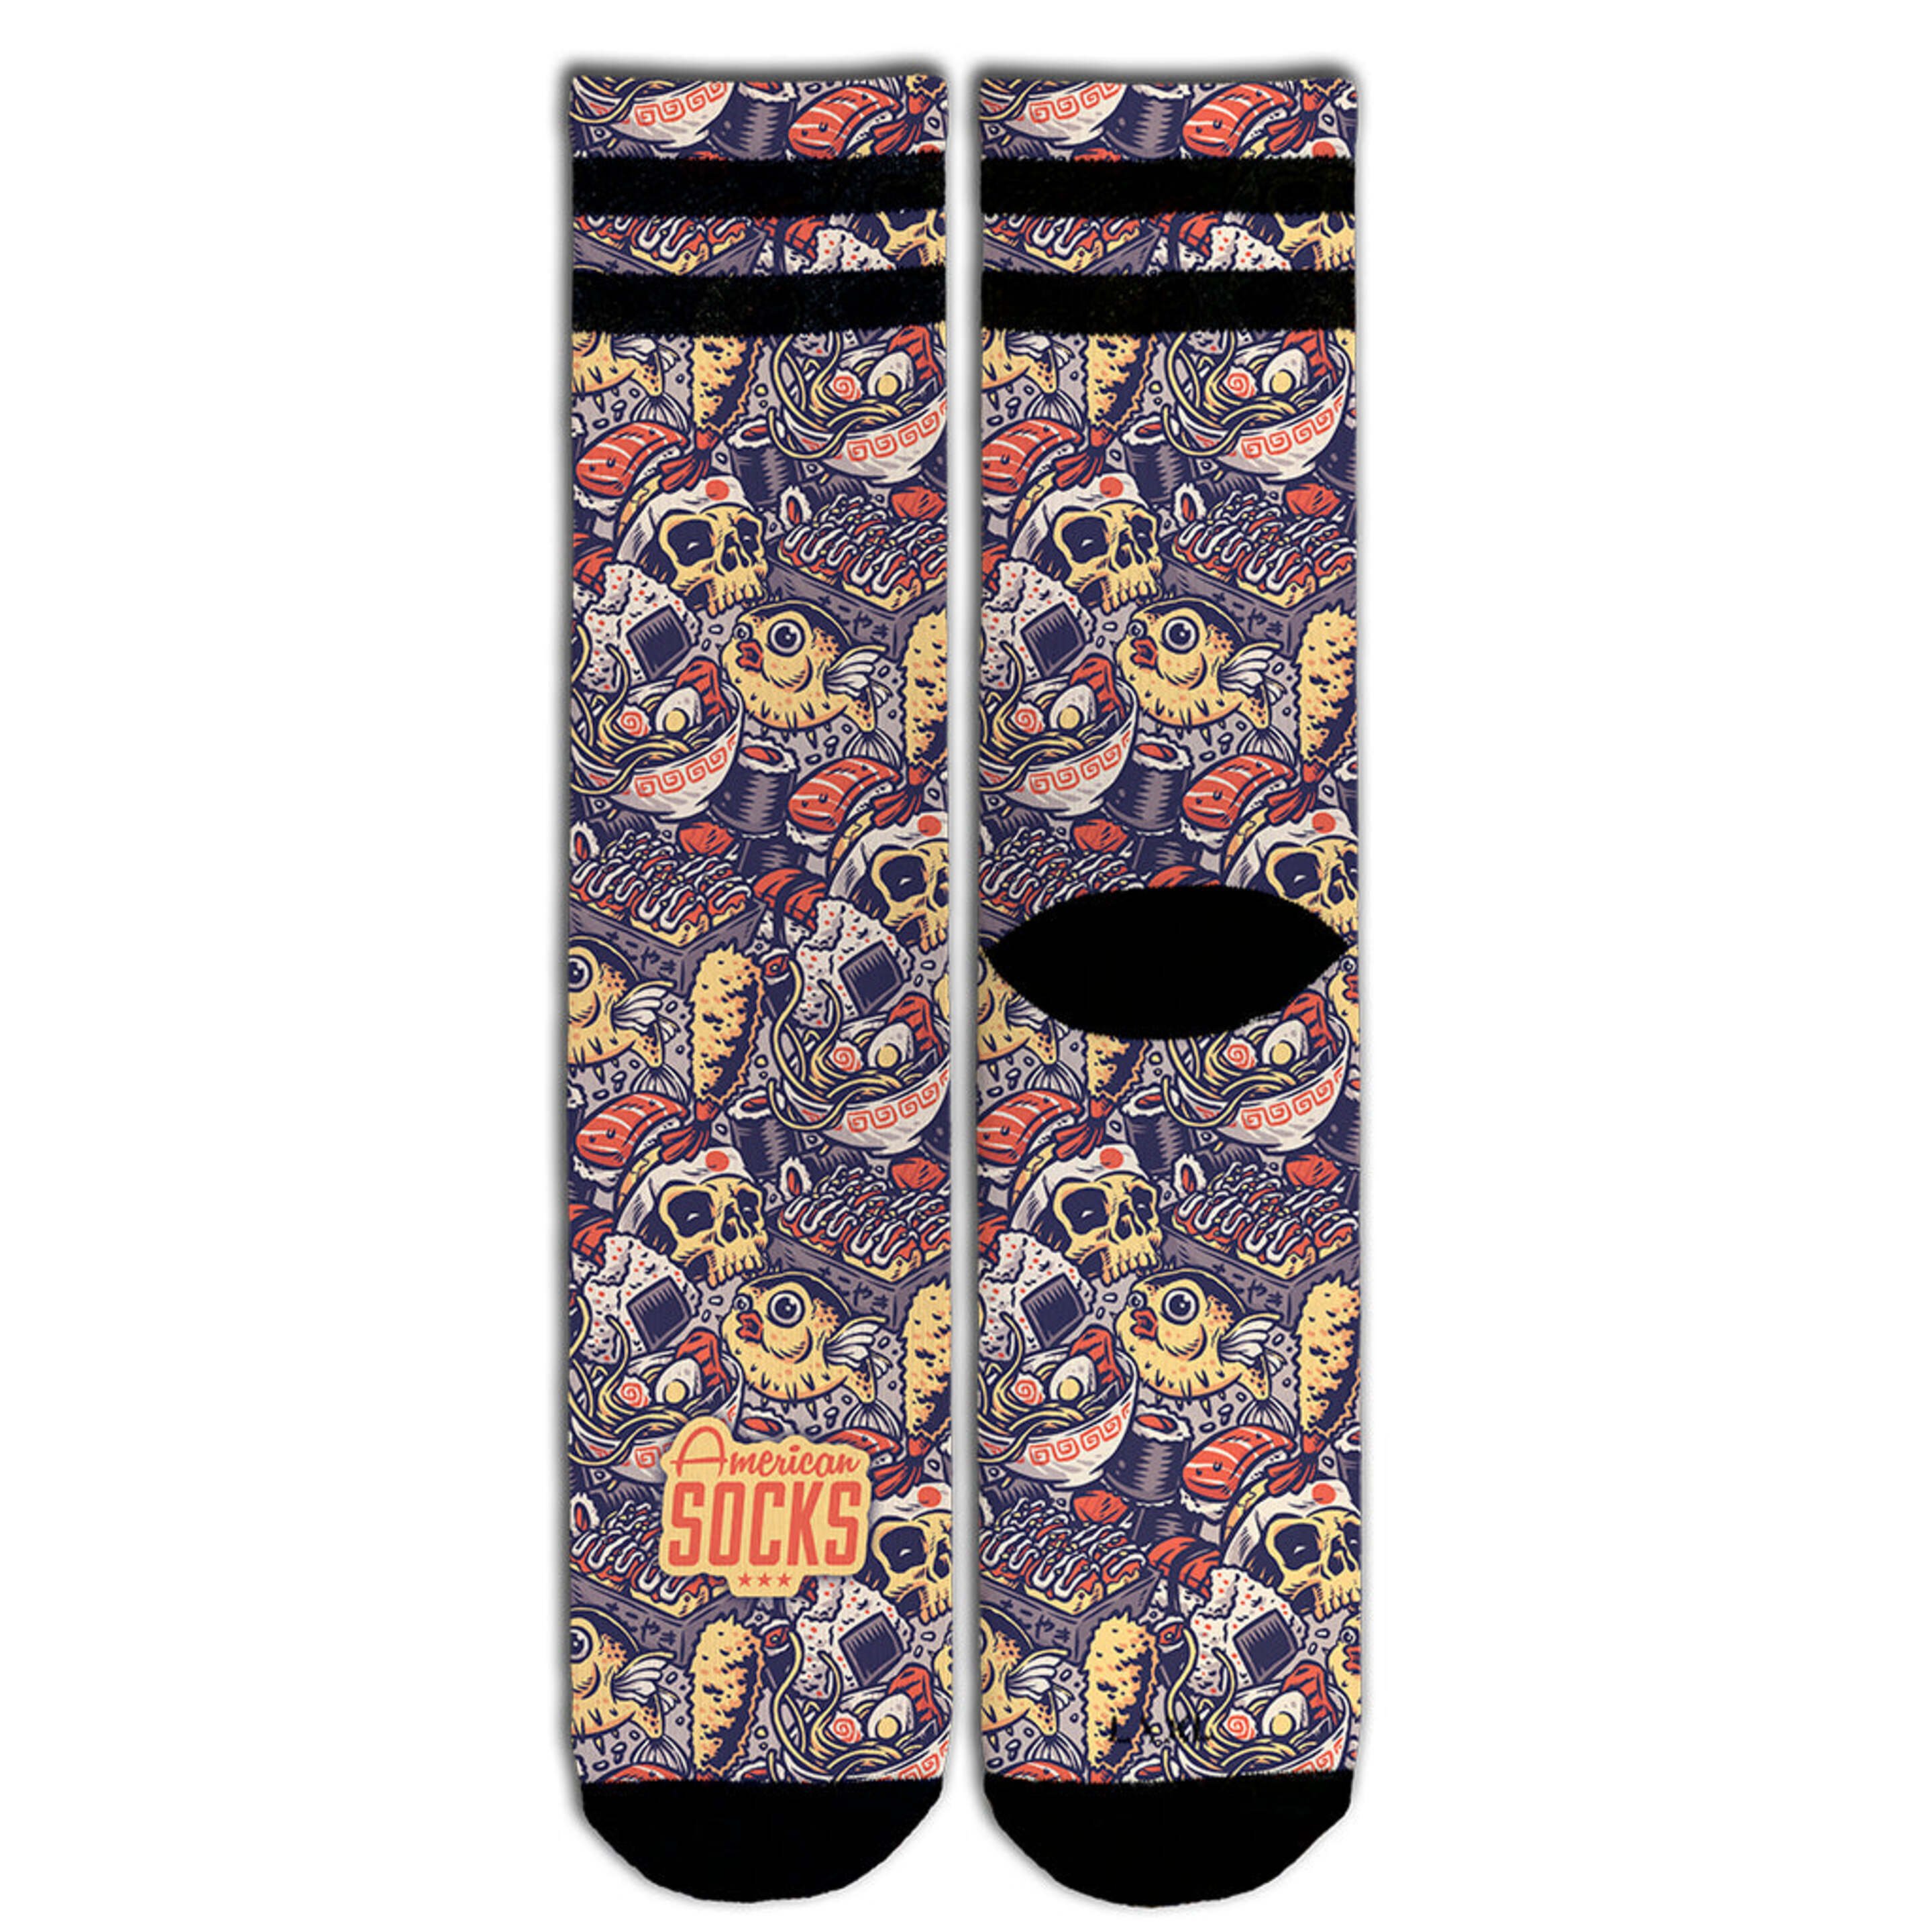 Meias American Socks - Oishii - Mid High